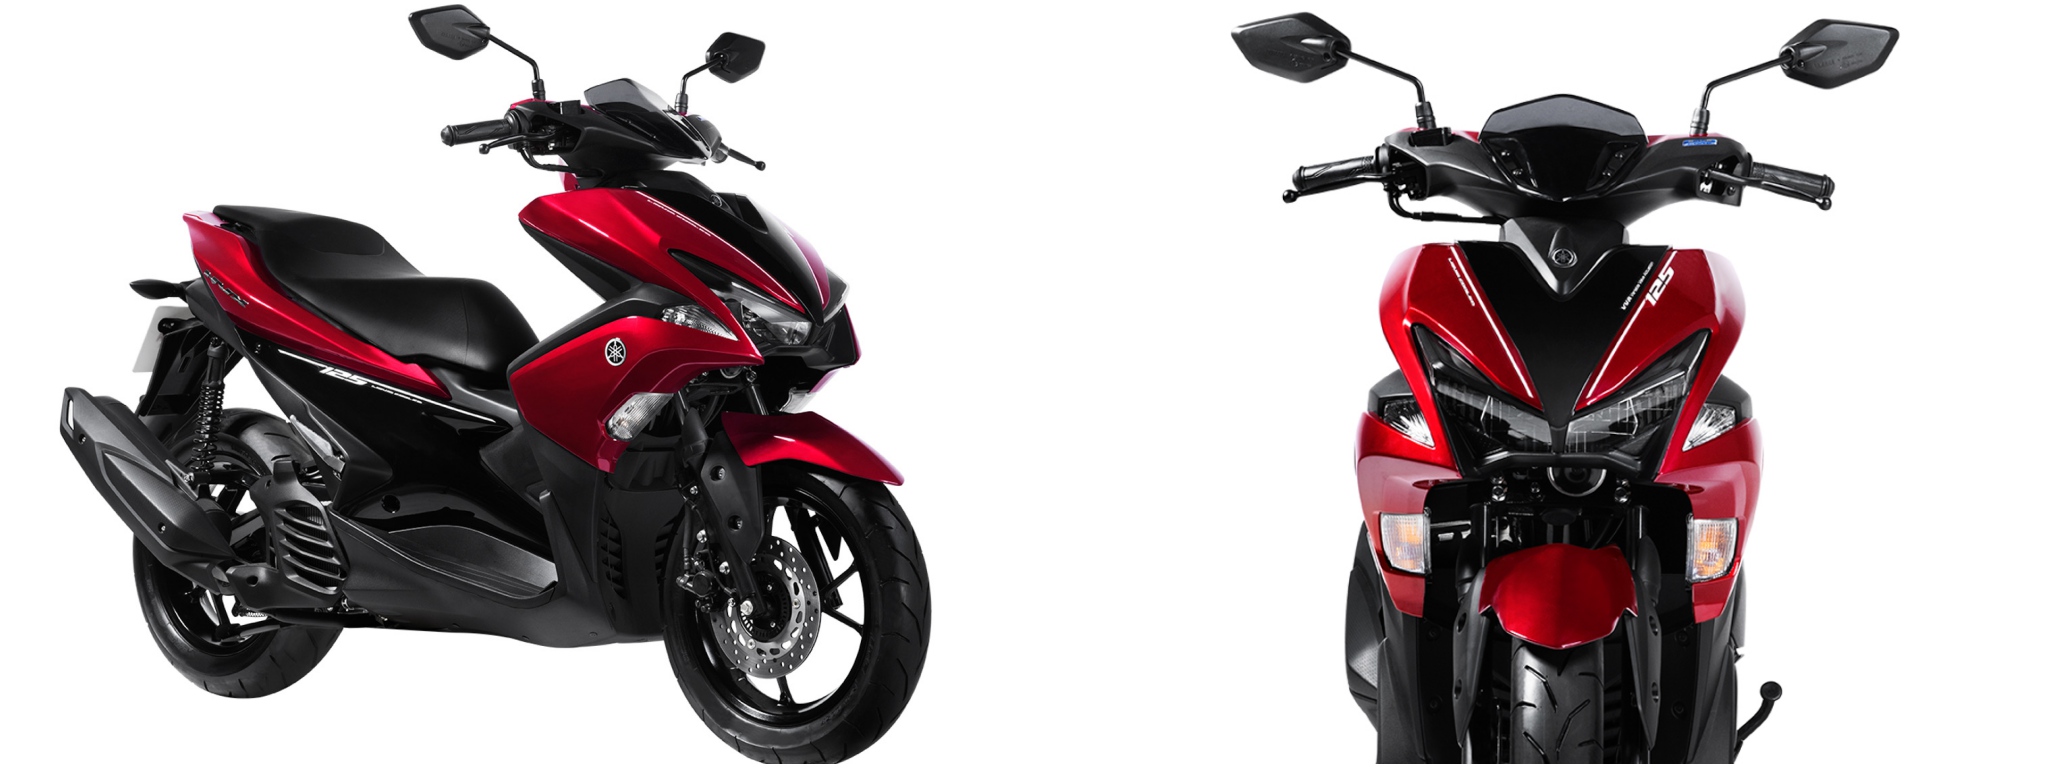 Đánh giá xe Yamaha NVX 125cc 2018 kèm hình ảnh màu sắc chi tiết  giá bán   Danhgiaxe